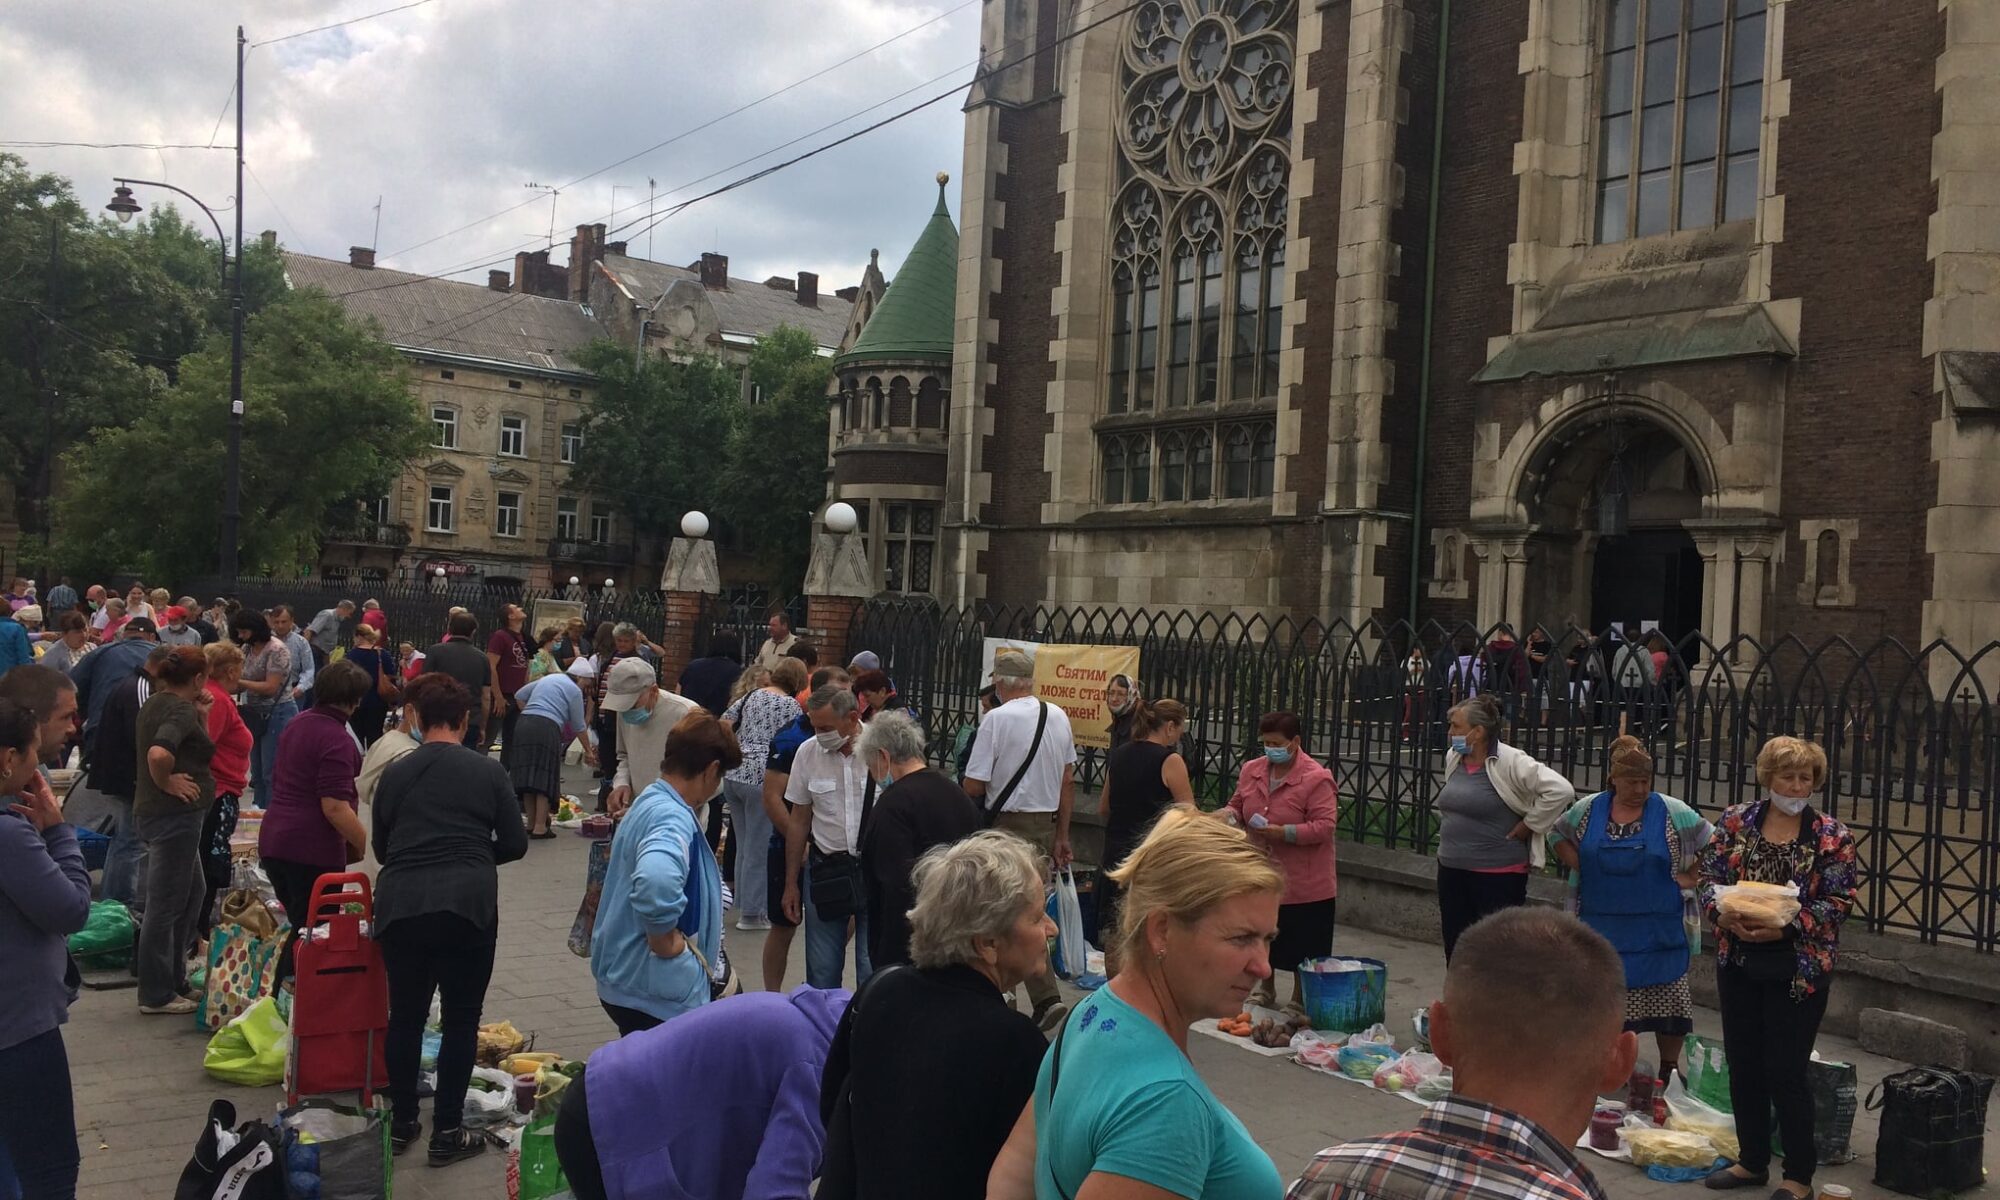 Ще один крок і базар увійде до святині: у Львові священник скаржиться на торгівлю біля церкви (ФОТО)